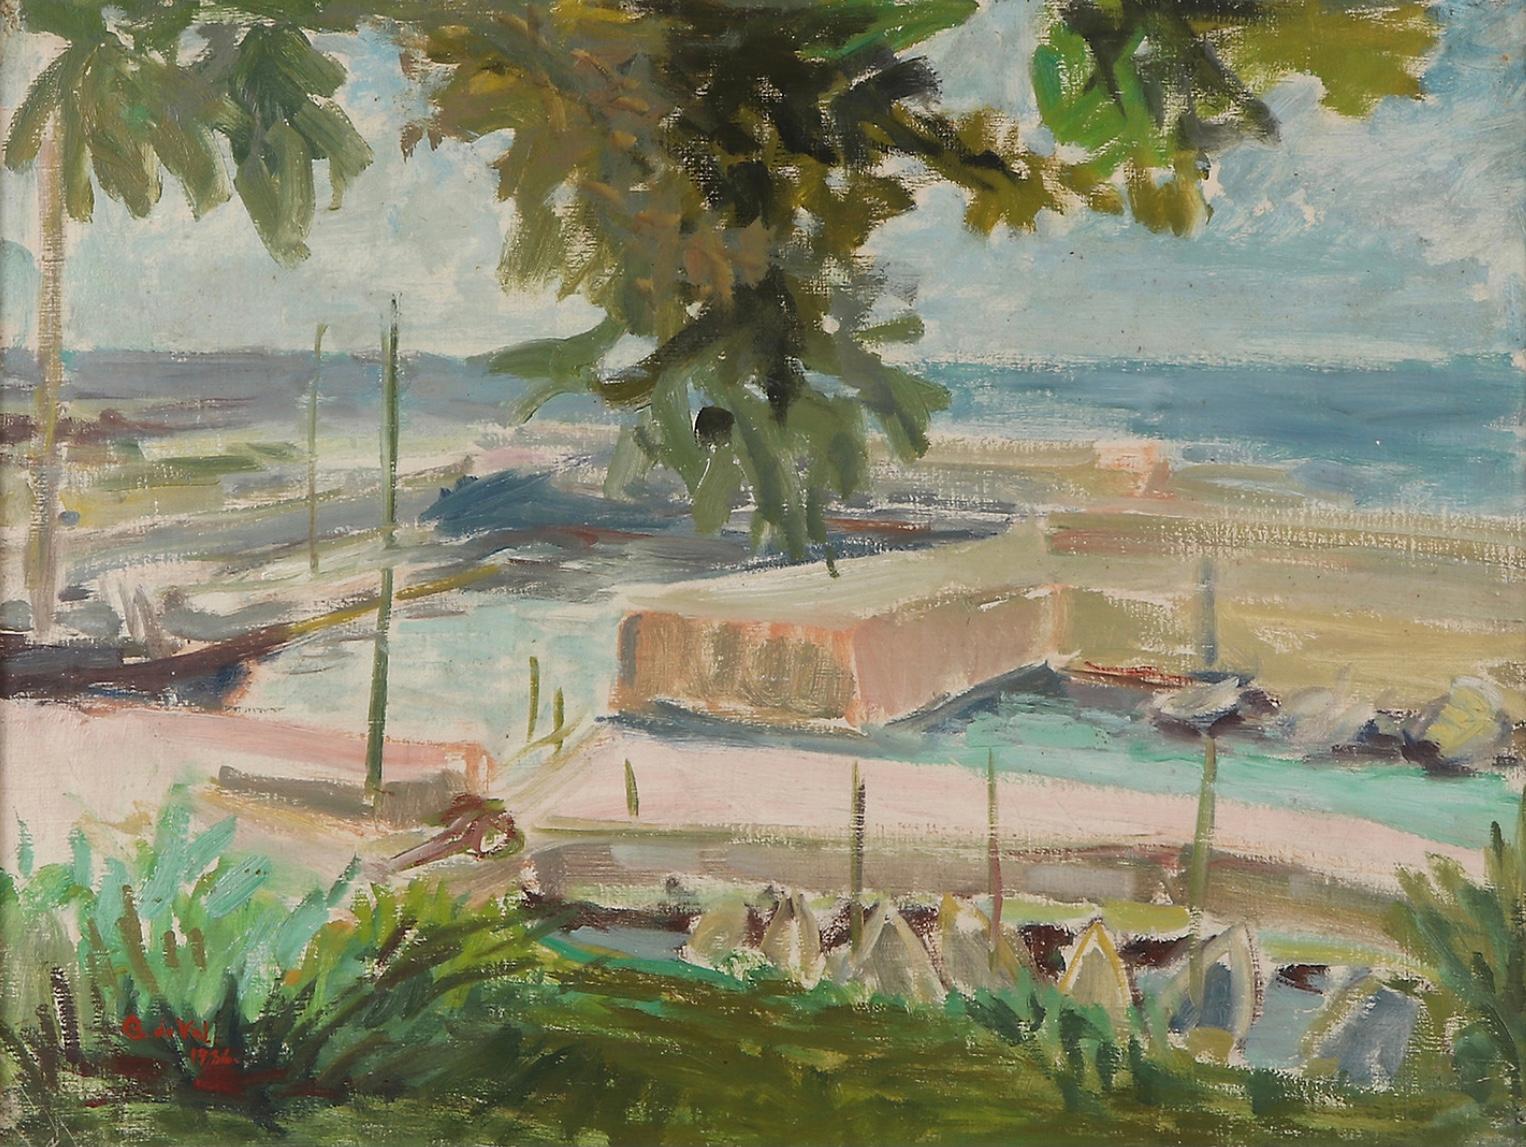 Charmantes gerahmtes Öl auf Leinwand einer französischen Marina der schwedischen Künstlerin Gertrude de Val aus dem Jahr 1936.
Hauptsächlich in Blau- und Grüntönen gestrichen, blickt man unter dem Schatten eines Olivenbaums auf die Marina und das